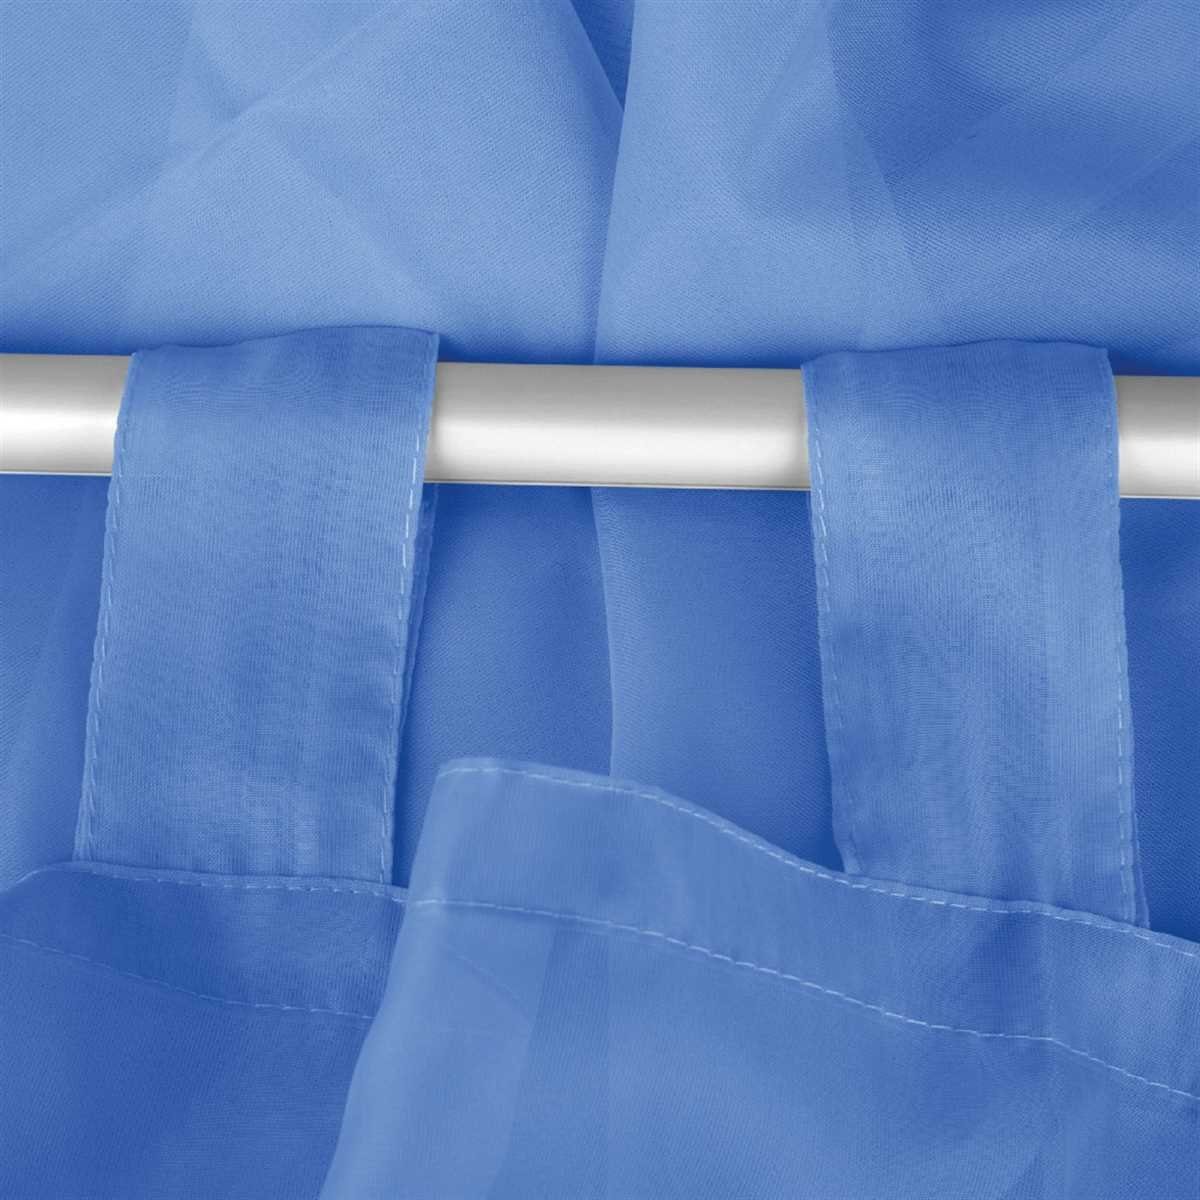 Voile, Gardinenset Schlaufenschals 2 Blau Bestlivings, transparent, Vorhang, St), (2 "Transparent", Schlaufen